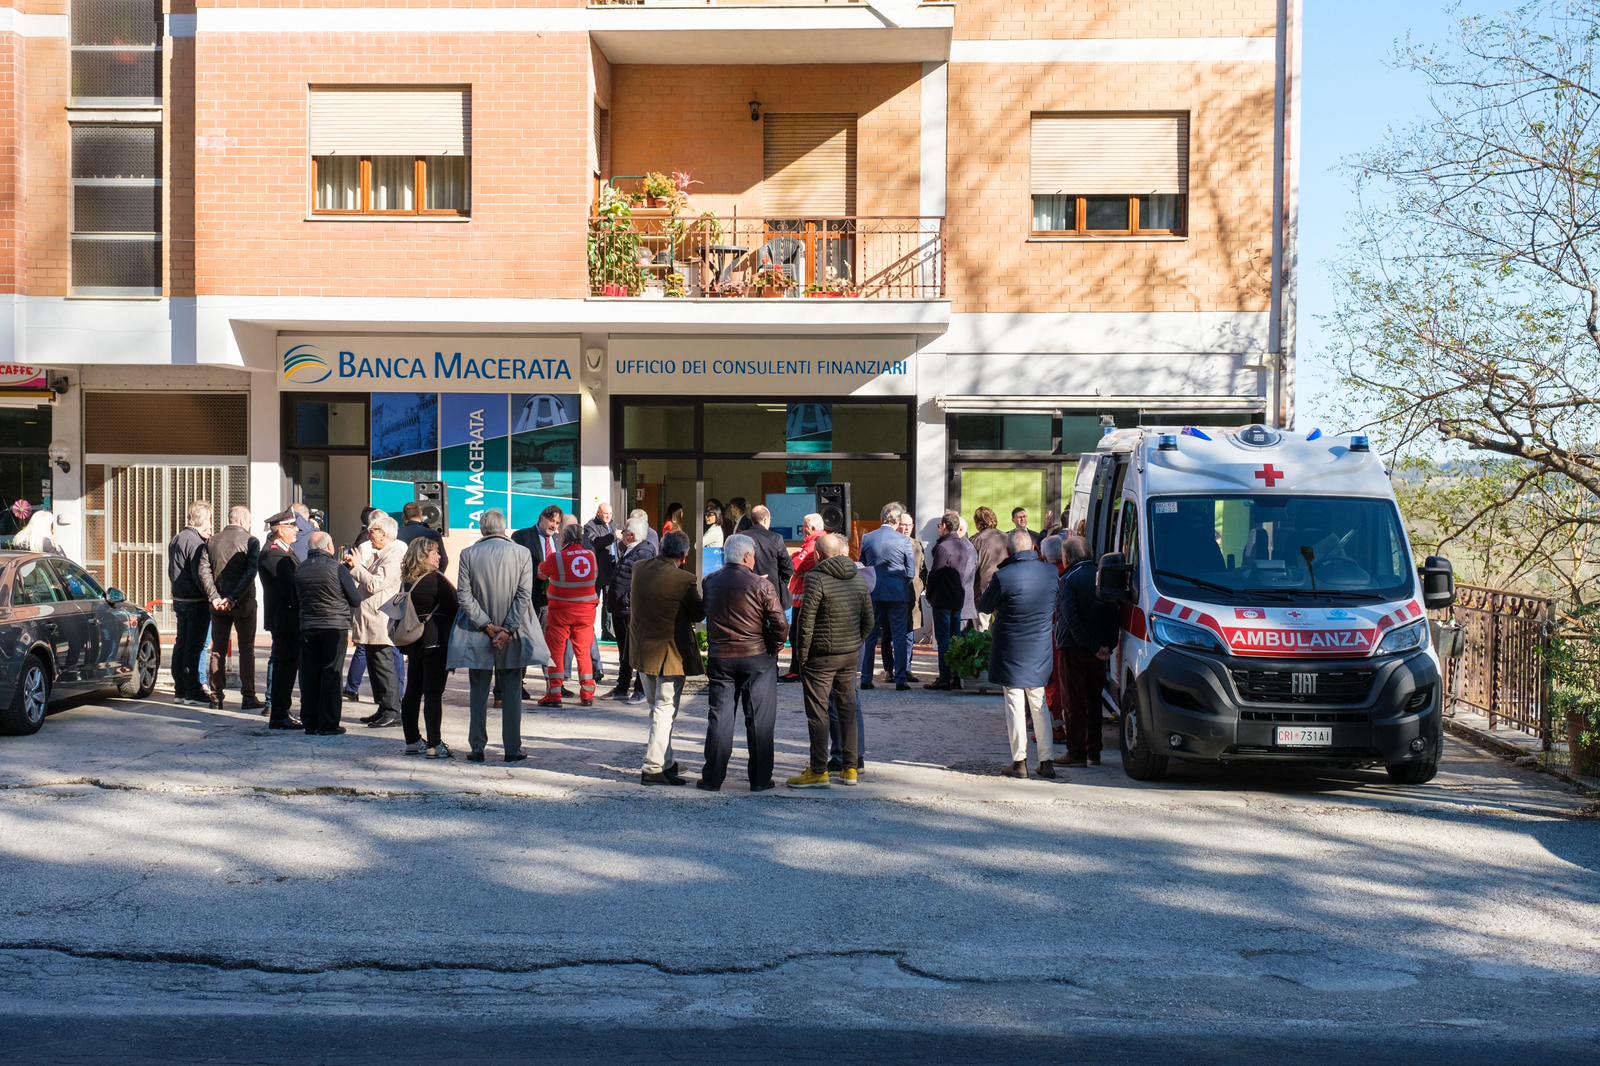 Banca Macerata arriva anche a Sarnano | Banca Macerata 9